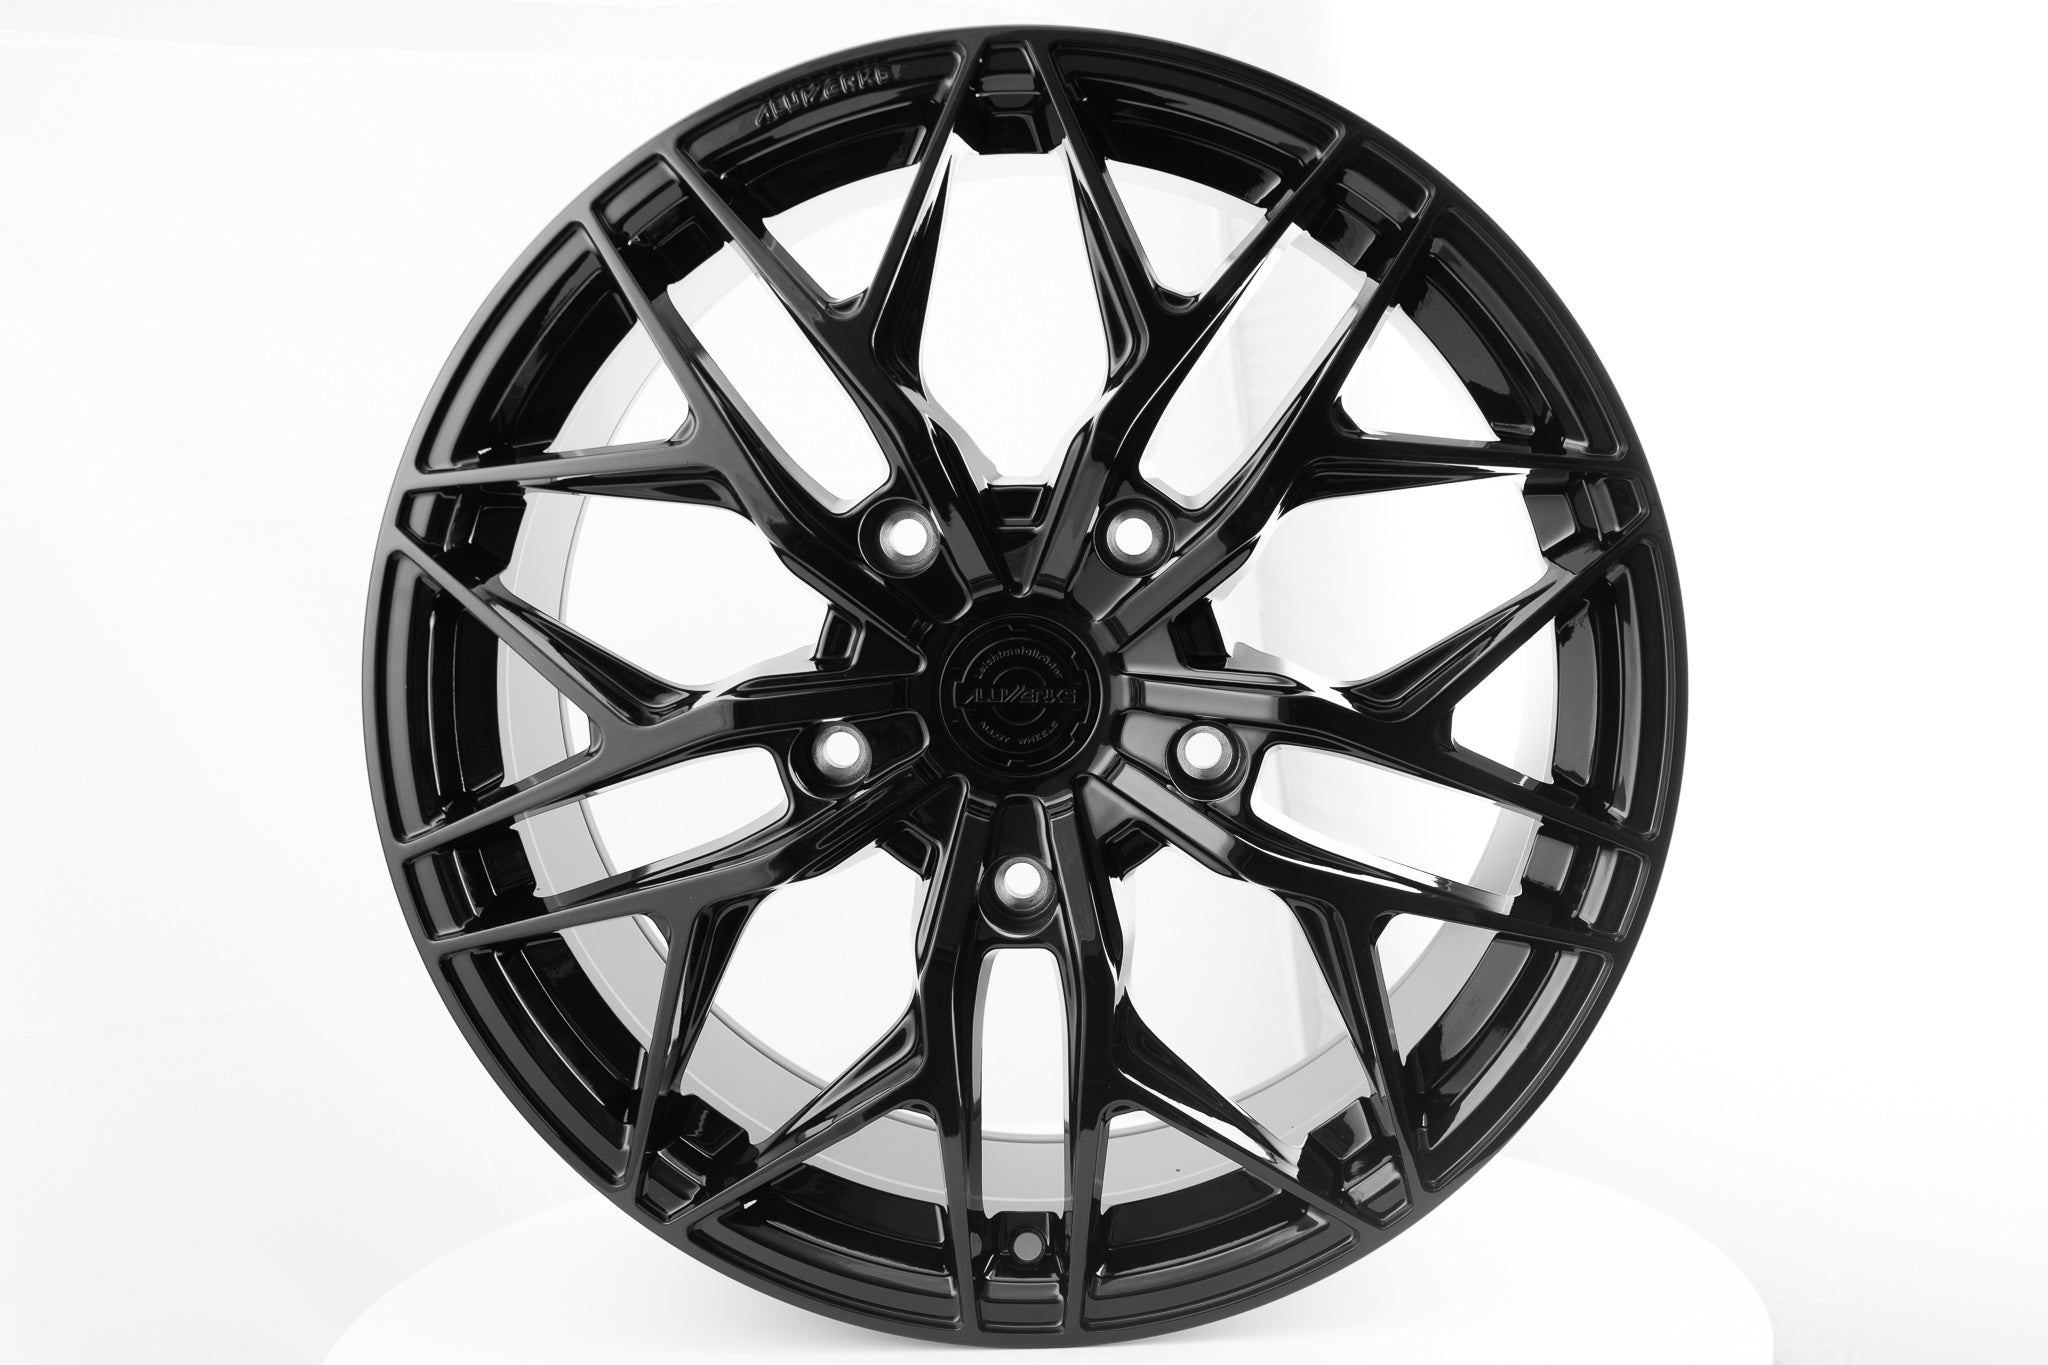 20" Aluwerks XT3 wheels Gloss Black fits Audi BMW Mercedes VW Vauxhall